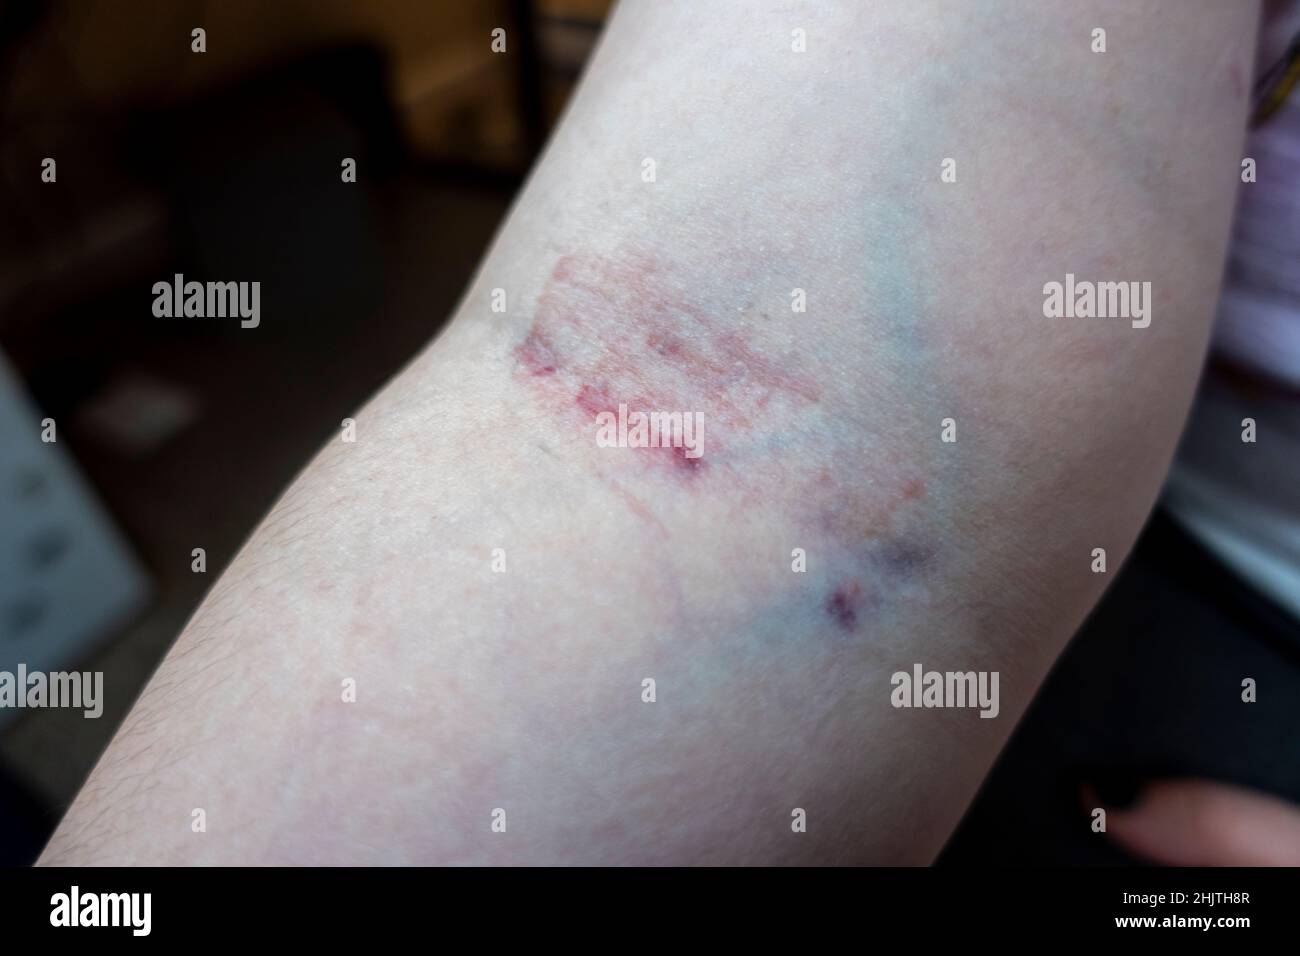 Vista ravvicinata del braccio di una donna caucasica dopo aver prelevato il sangue dalla stessa vena due volte in un giorno, causando grave irritazione cutanea Foto Stock